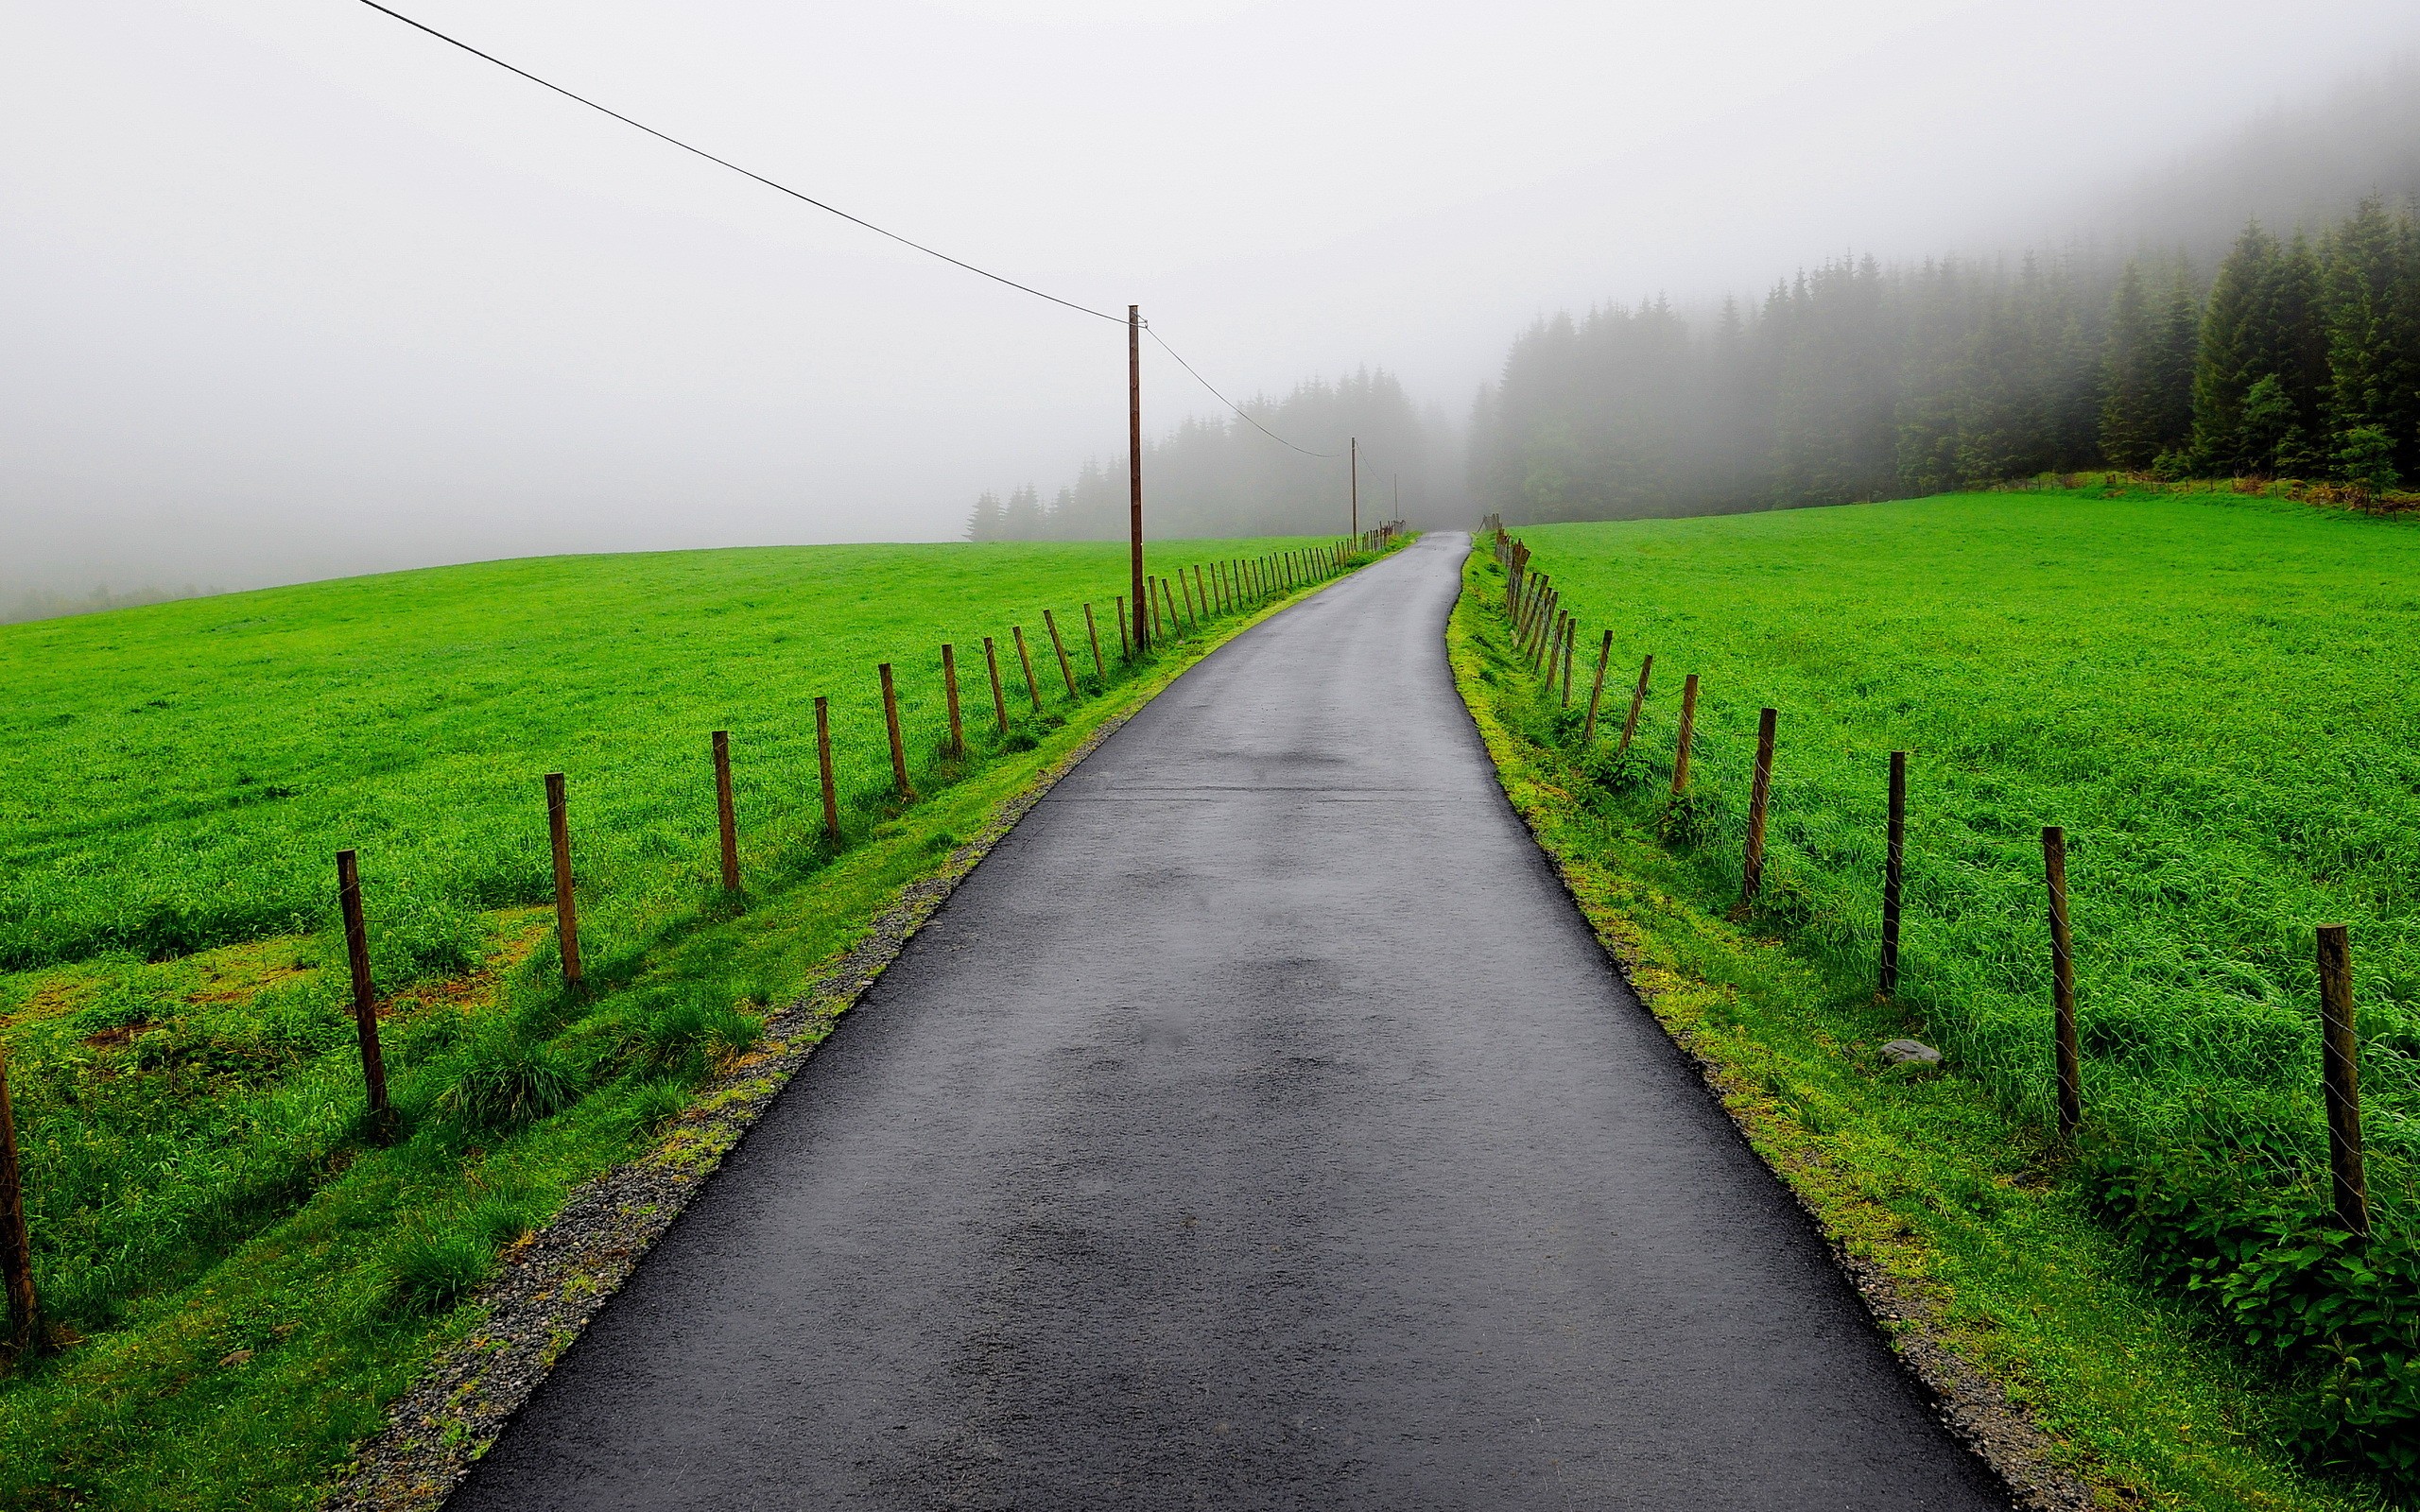 تصویر آرامش بخش جاده در طبیعت سبز با هوای پاک و مه آلود